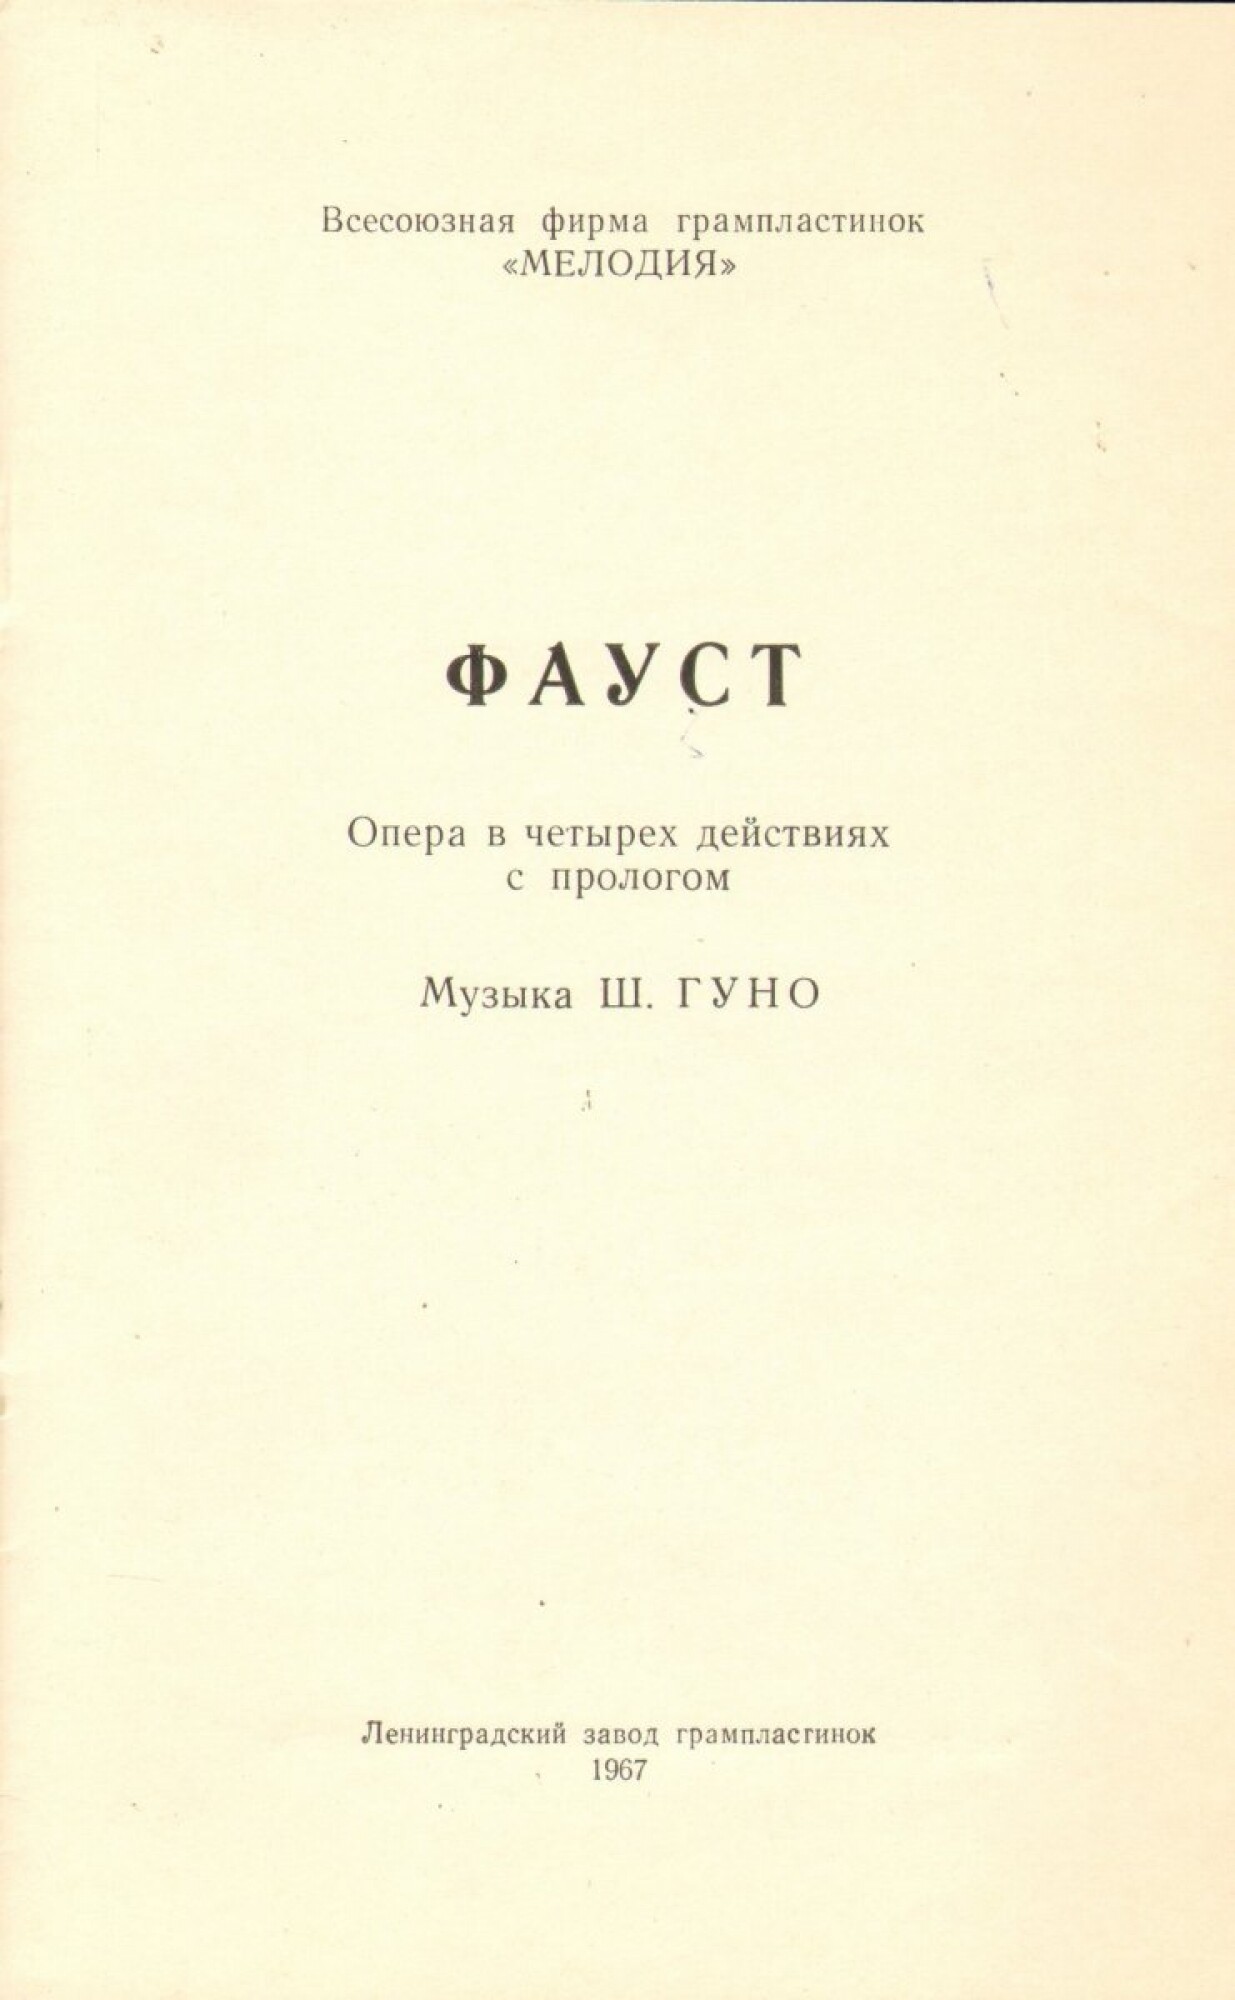 Ш. ГУНО (1818–1893) «Фауст», опера в 5 д. (на французском языке)